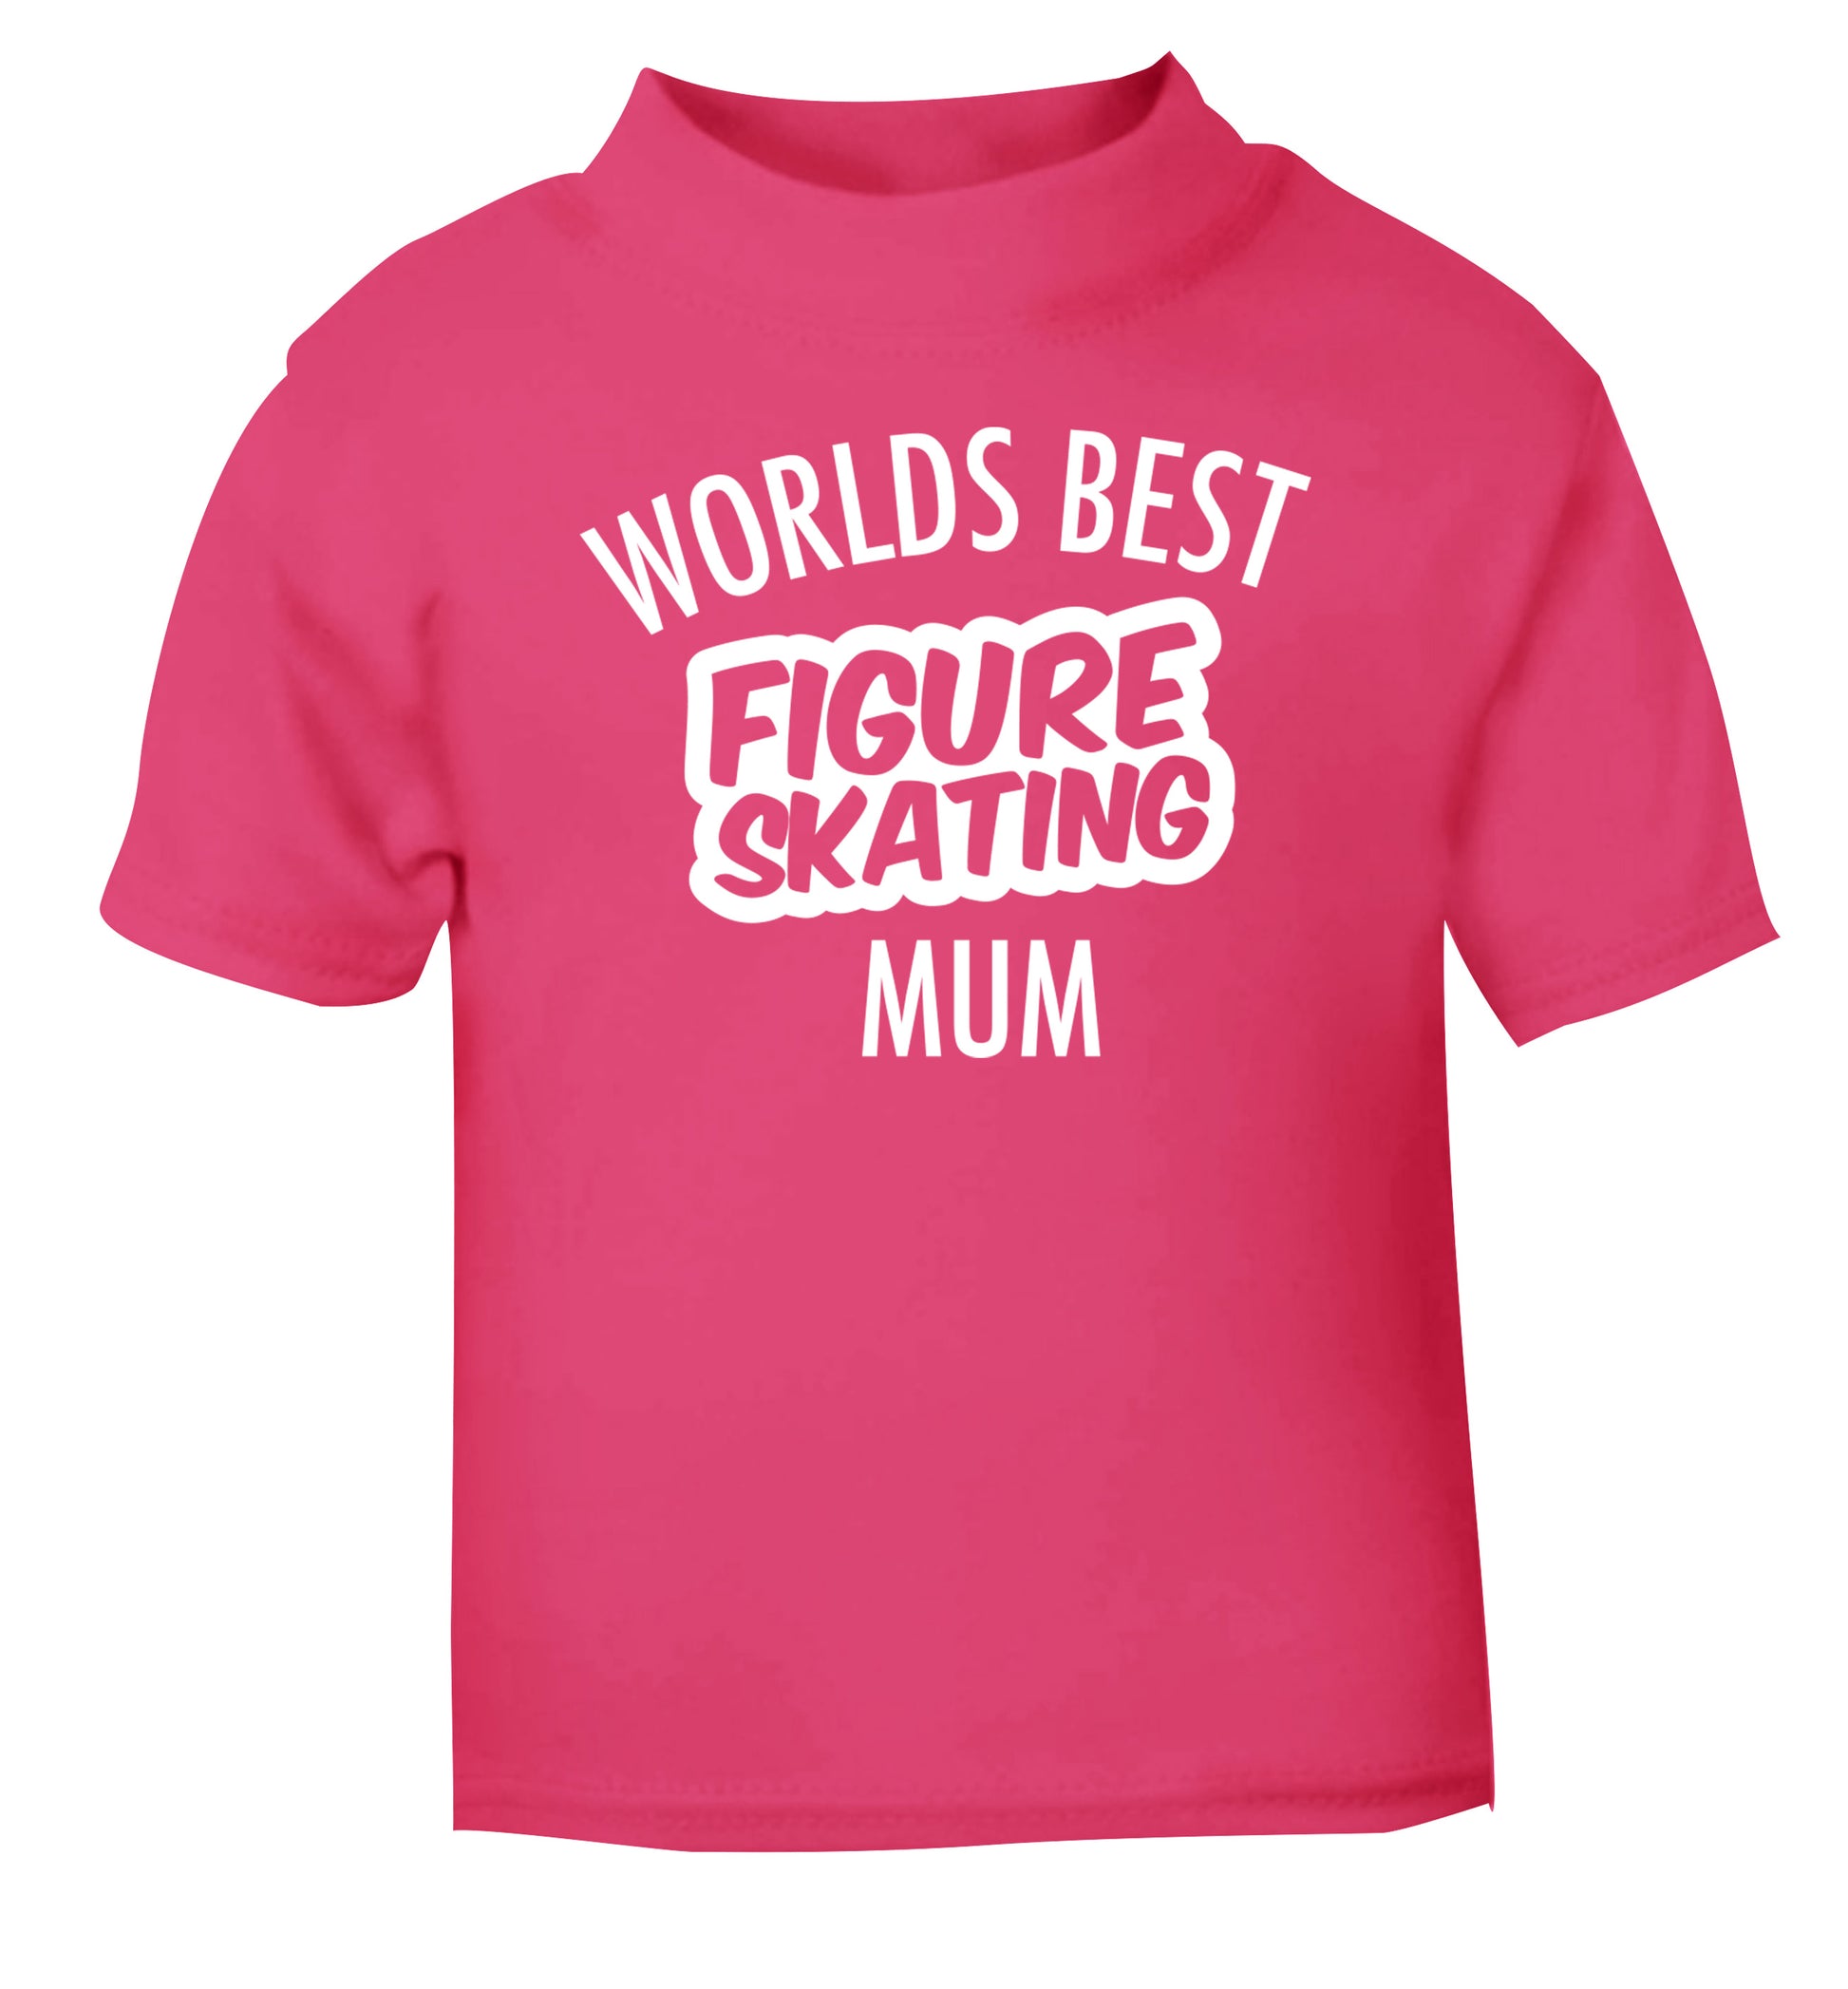 Worlds best figure skating mum pink Baby Toddler Tshirt 2 Years